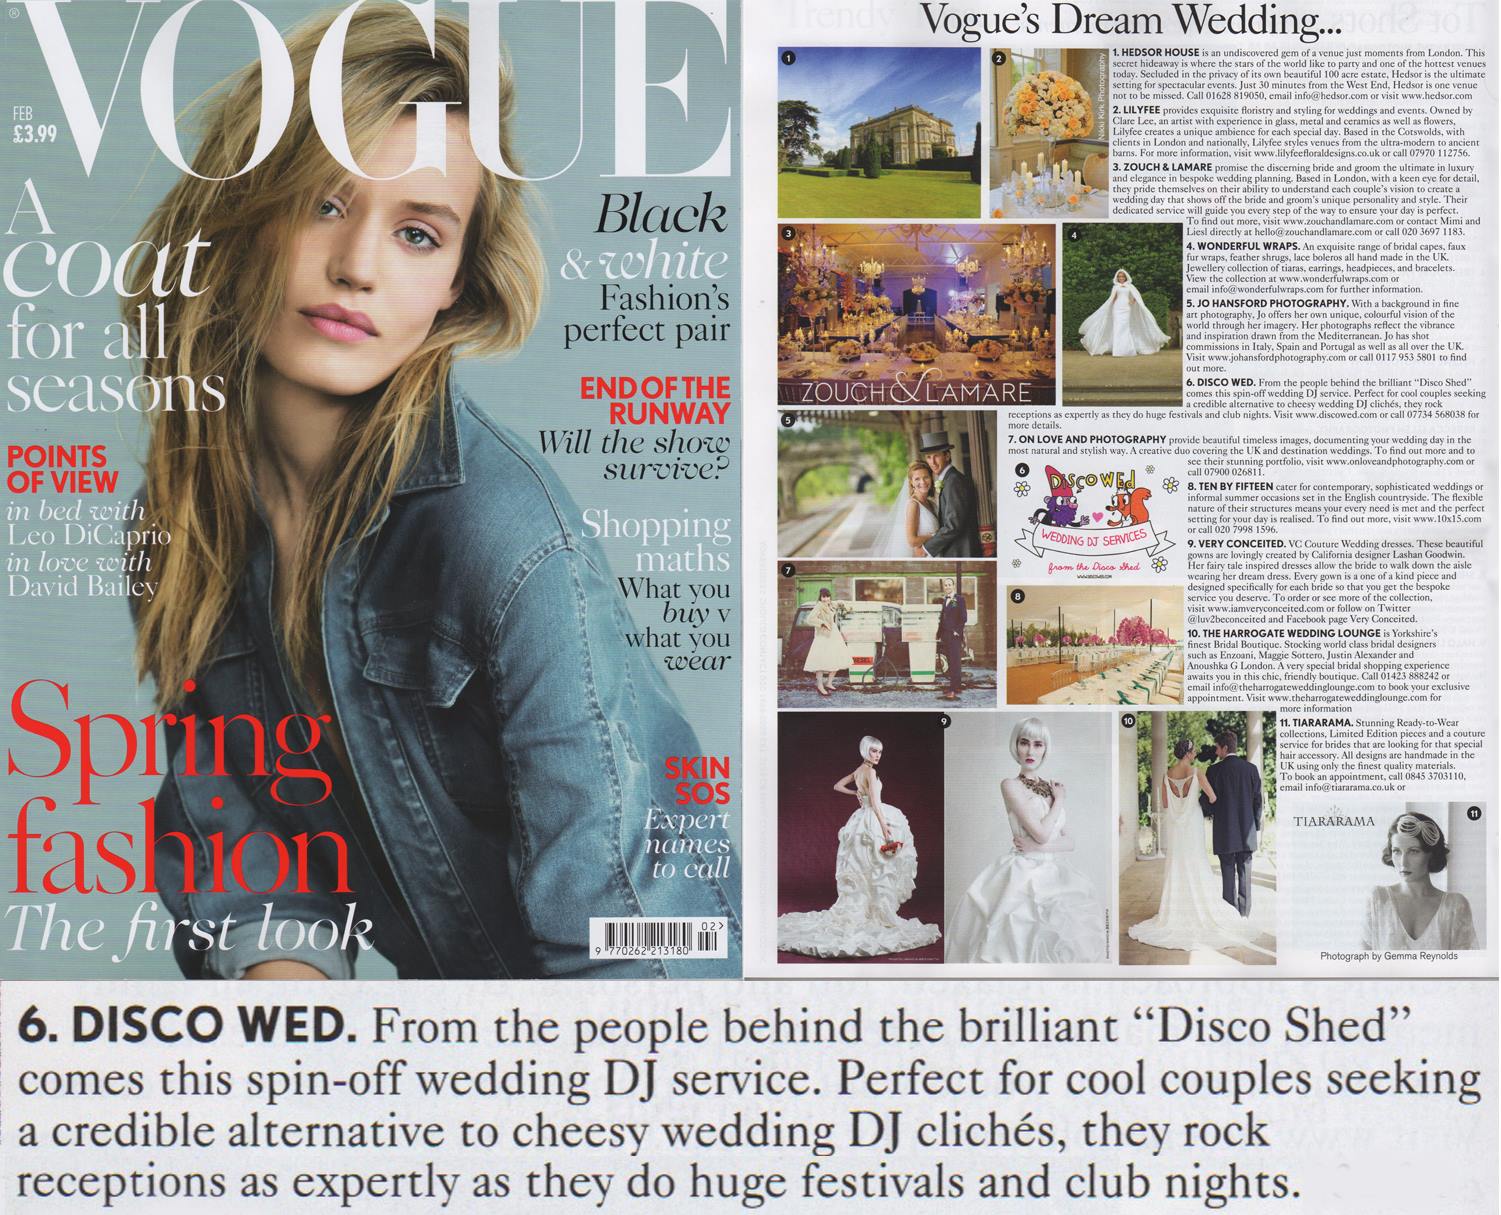 Disco Wed in Vogue Feb 2014.jpg